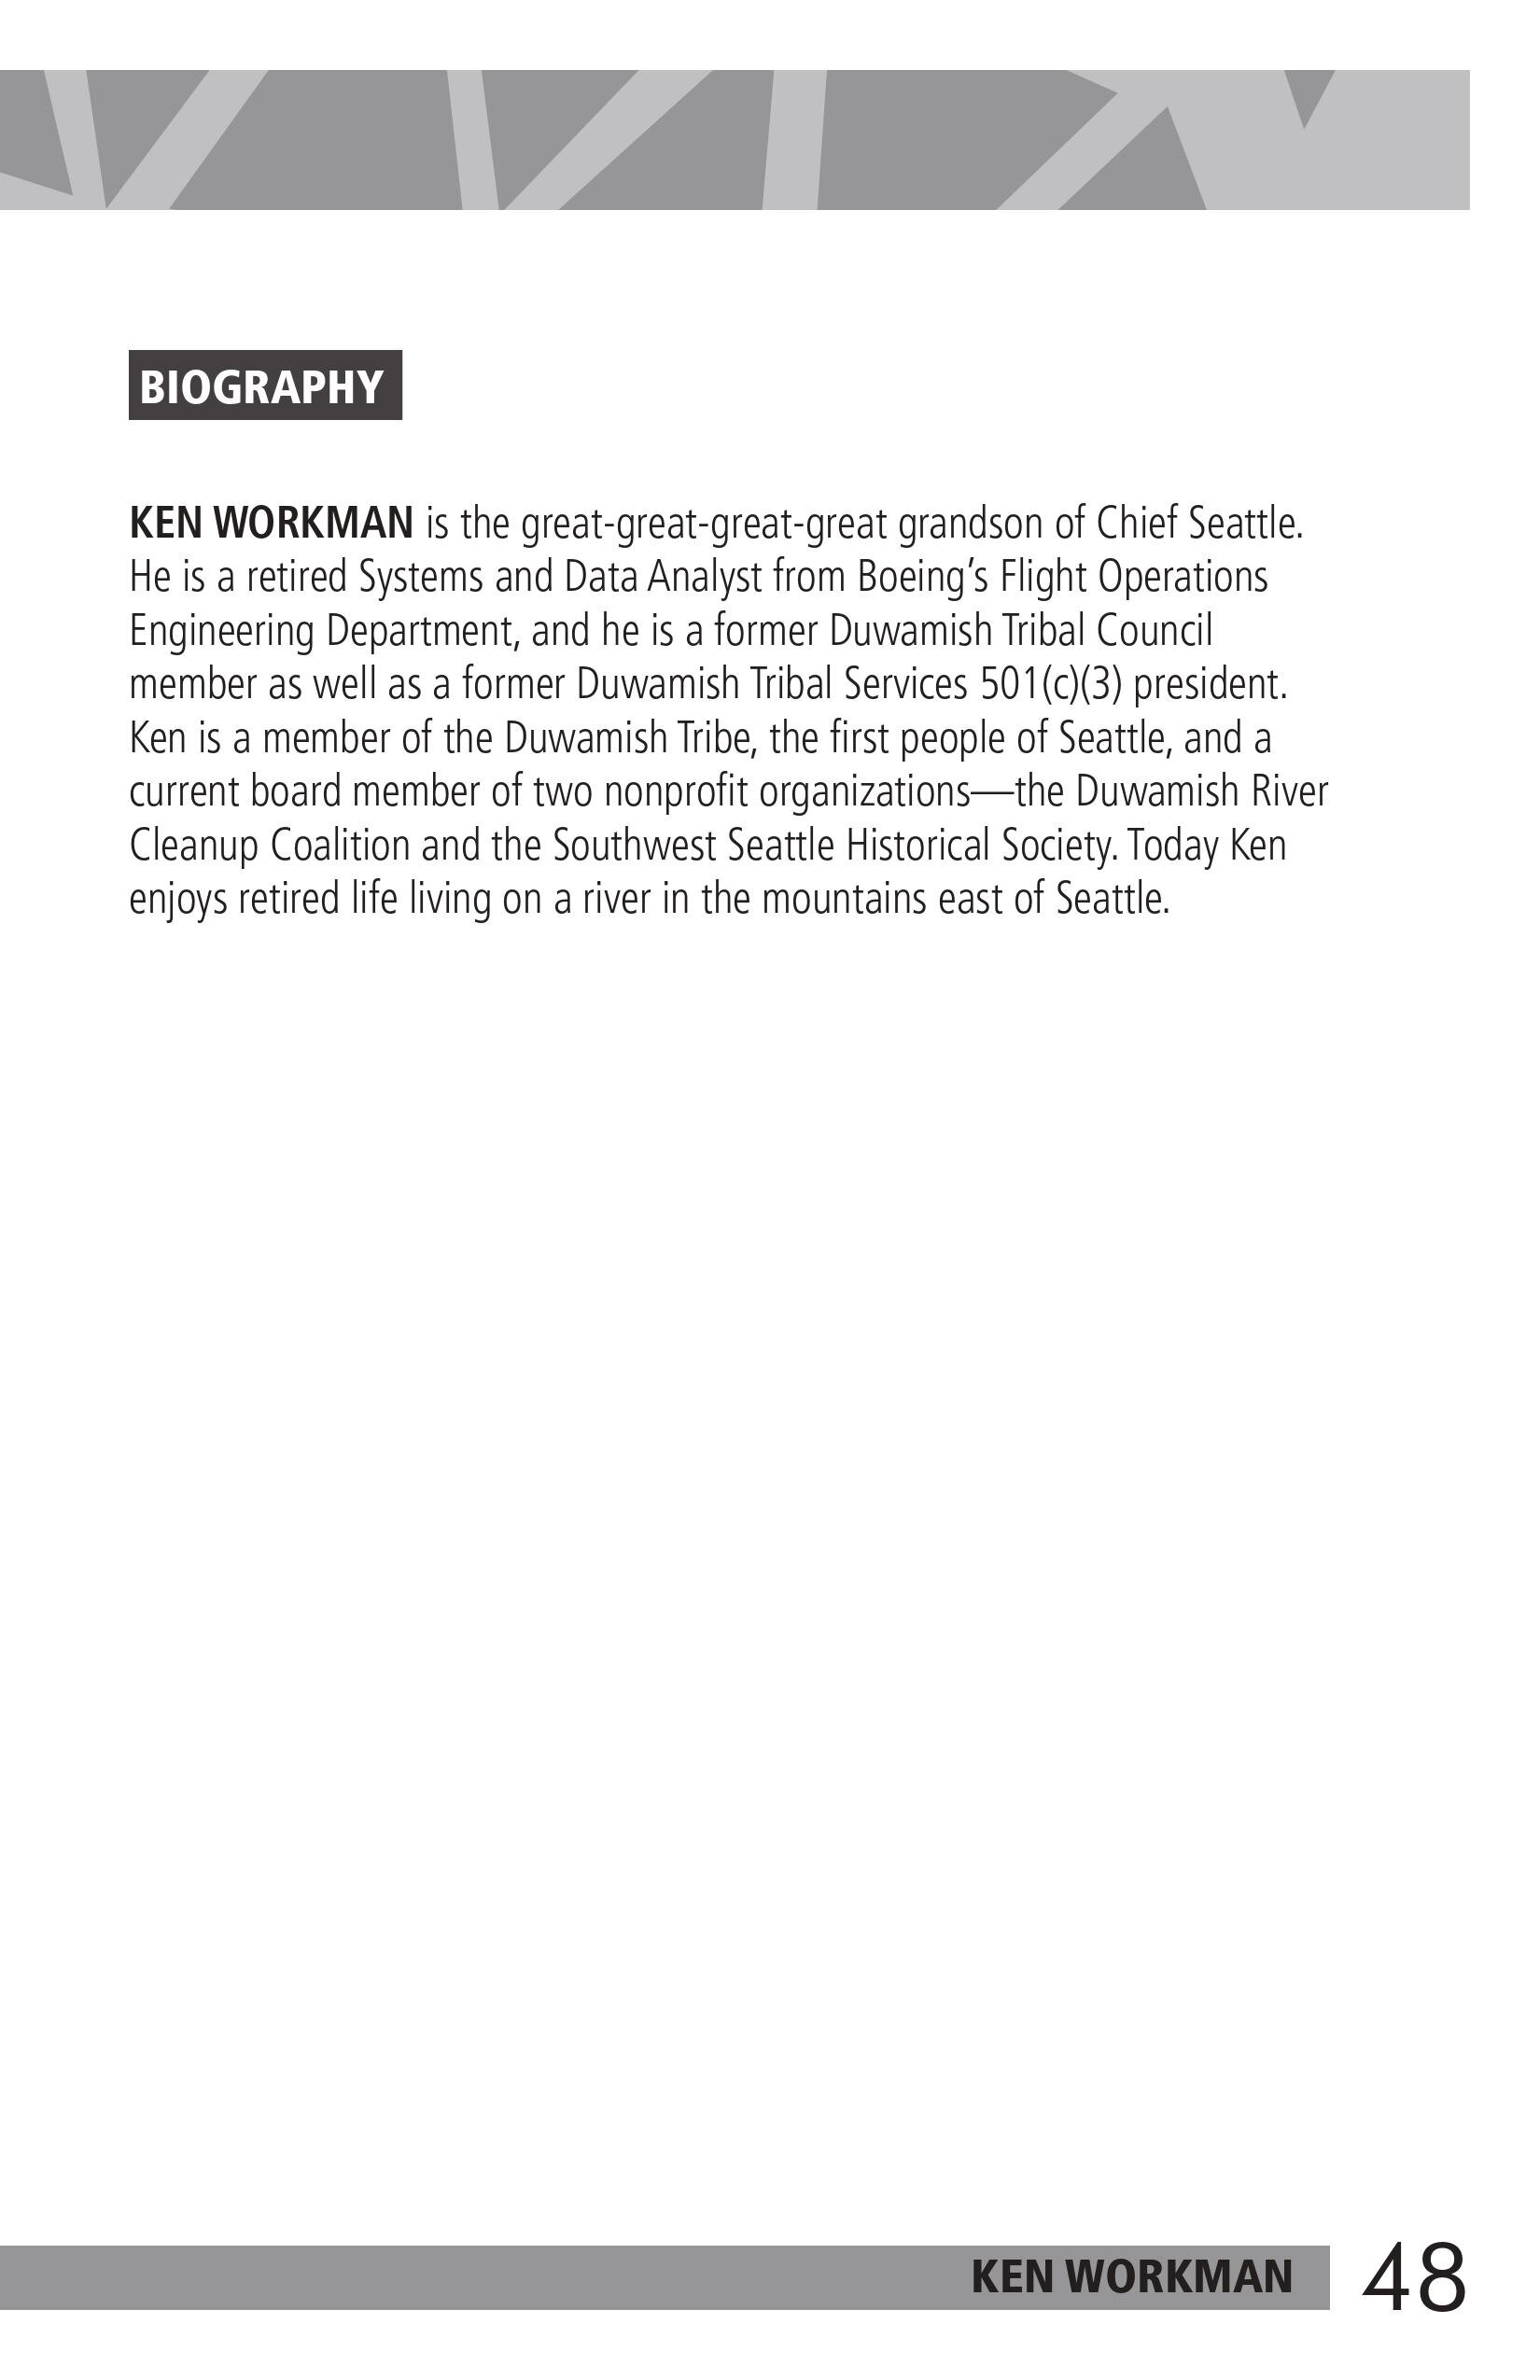 Ken Workman Page 48 Bio.jpg